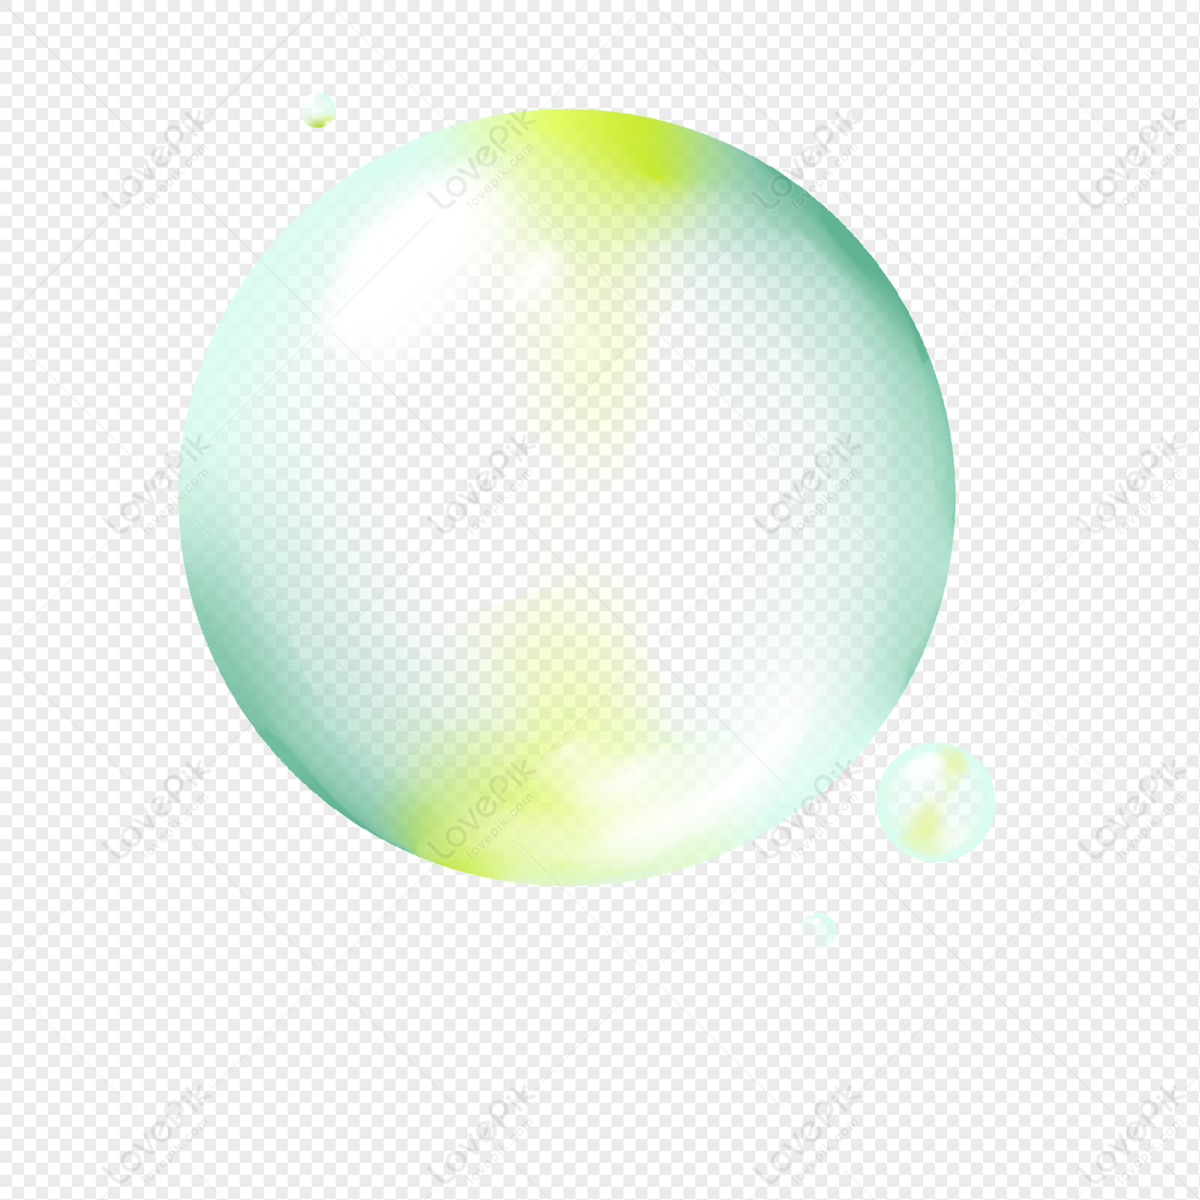 Hand drawn speech bubbles, bubble balls, bubbles, blowing bubbles png transparent background